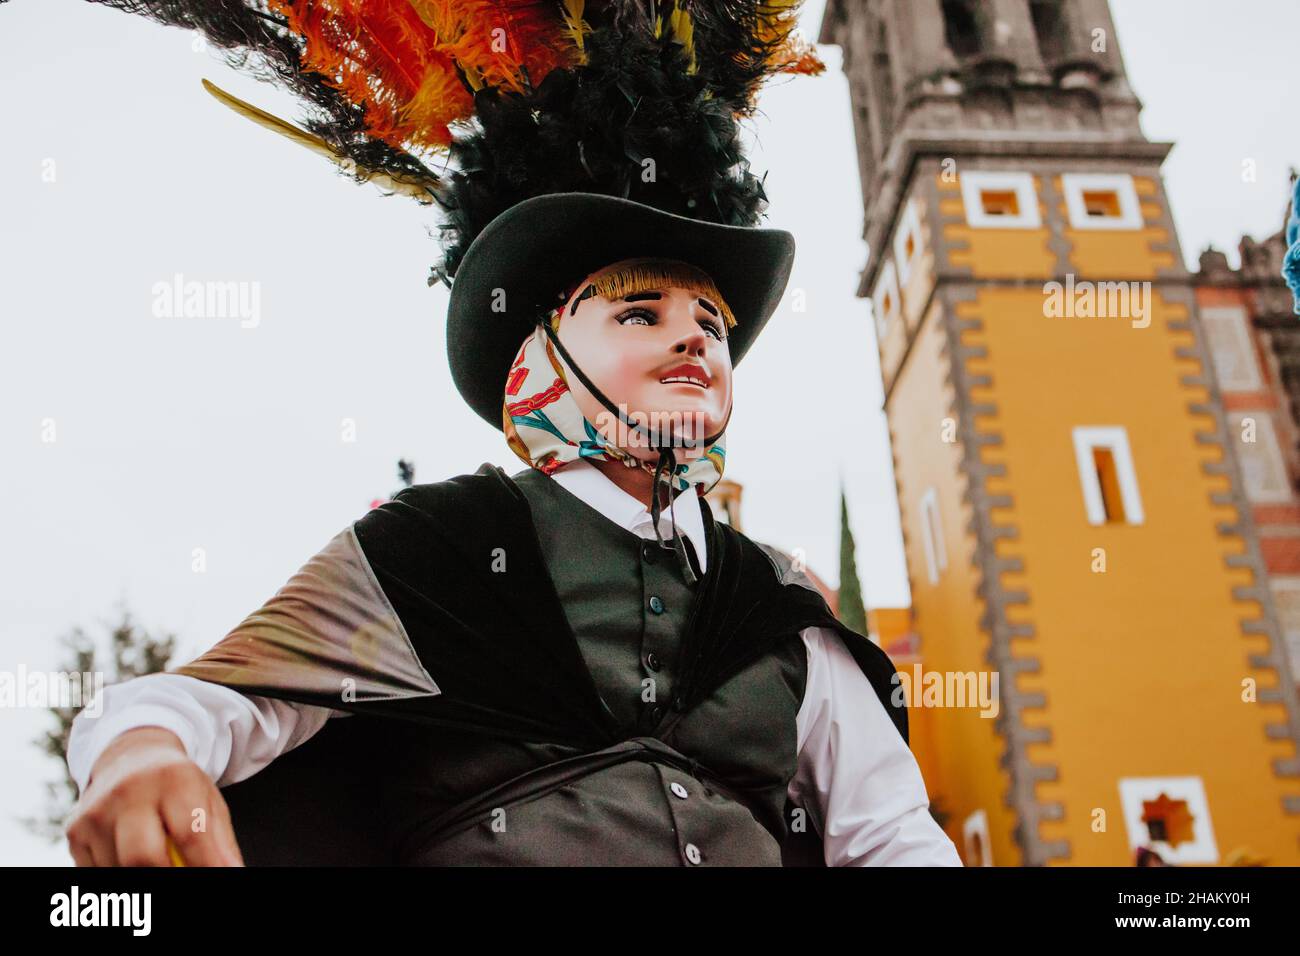 Huehues Mexico, danseur mexicain de carnaval portant un costume et un masque folkloriques traditionnels en Amérique latine Banque D'Images